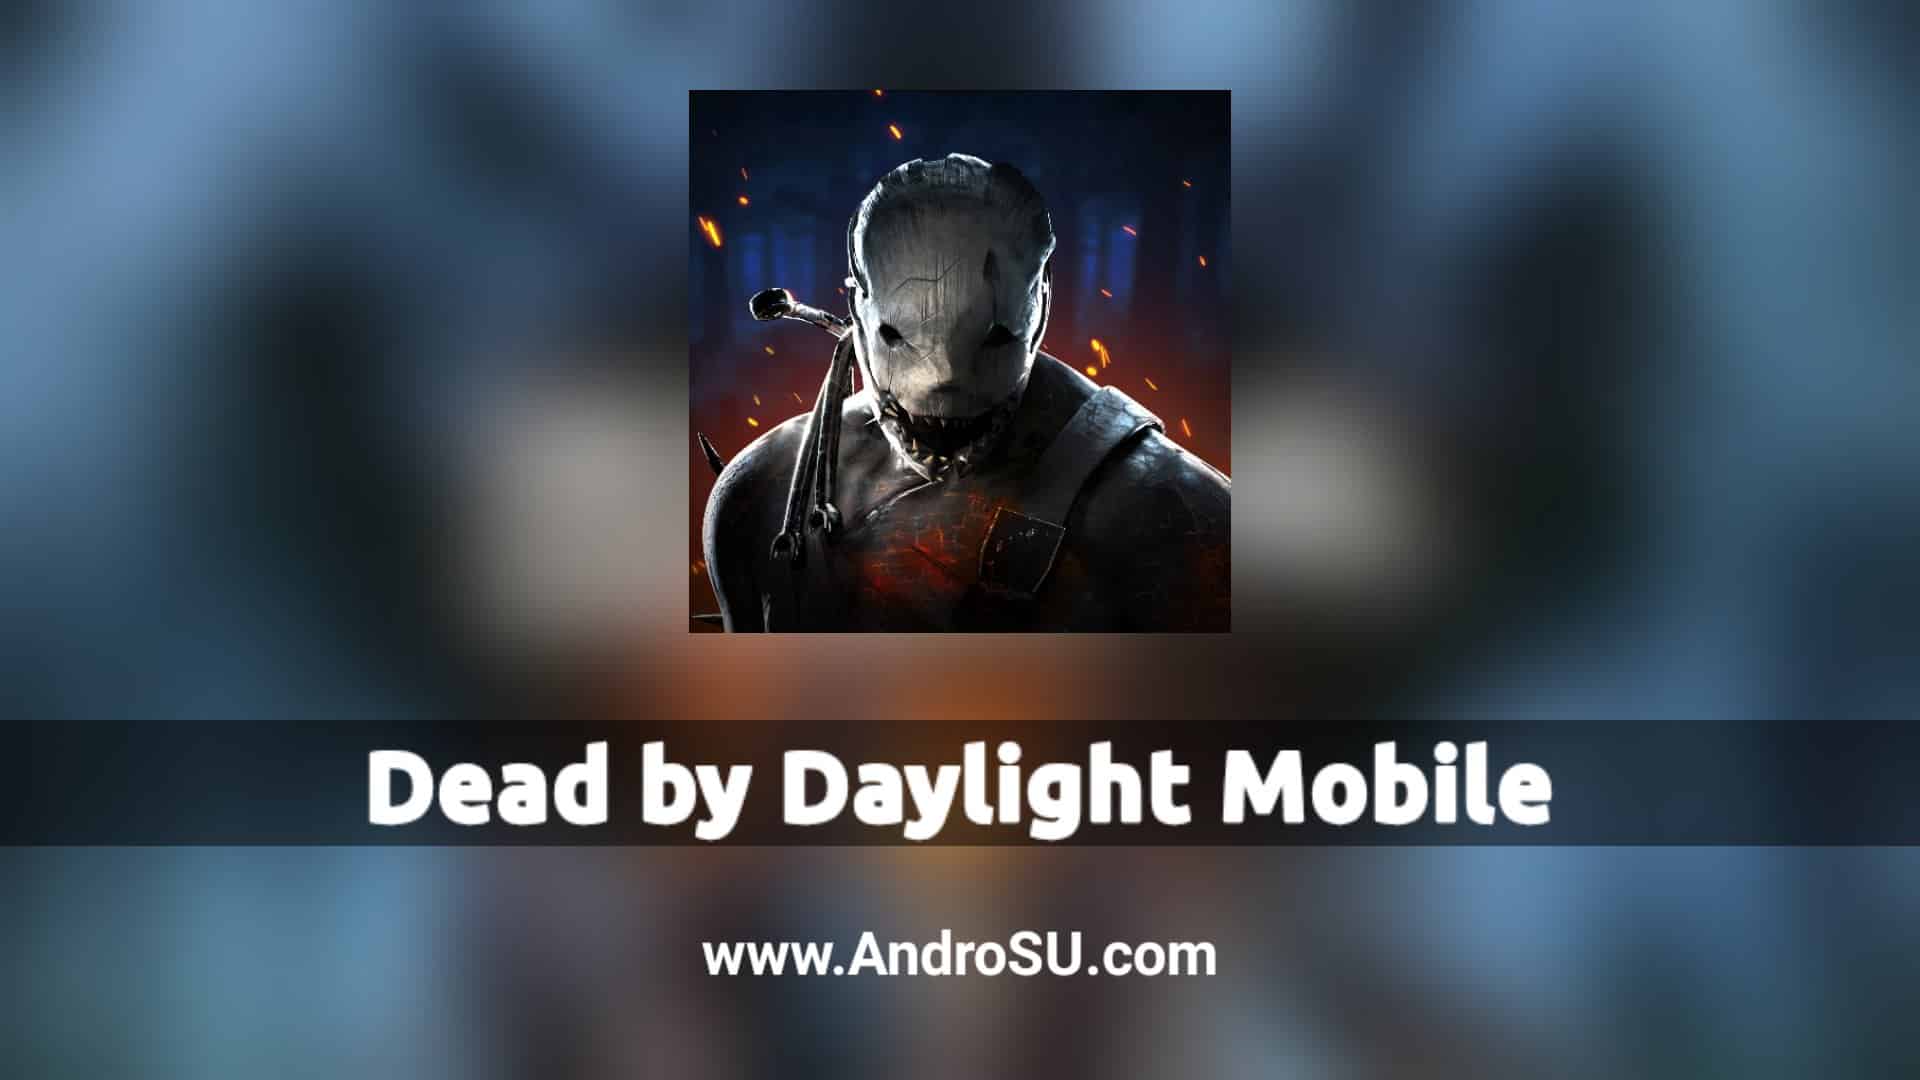 Dead by Daylight Mobile APK, Dead by Daylight Android, Dead by Daylight Android